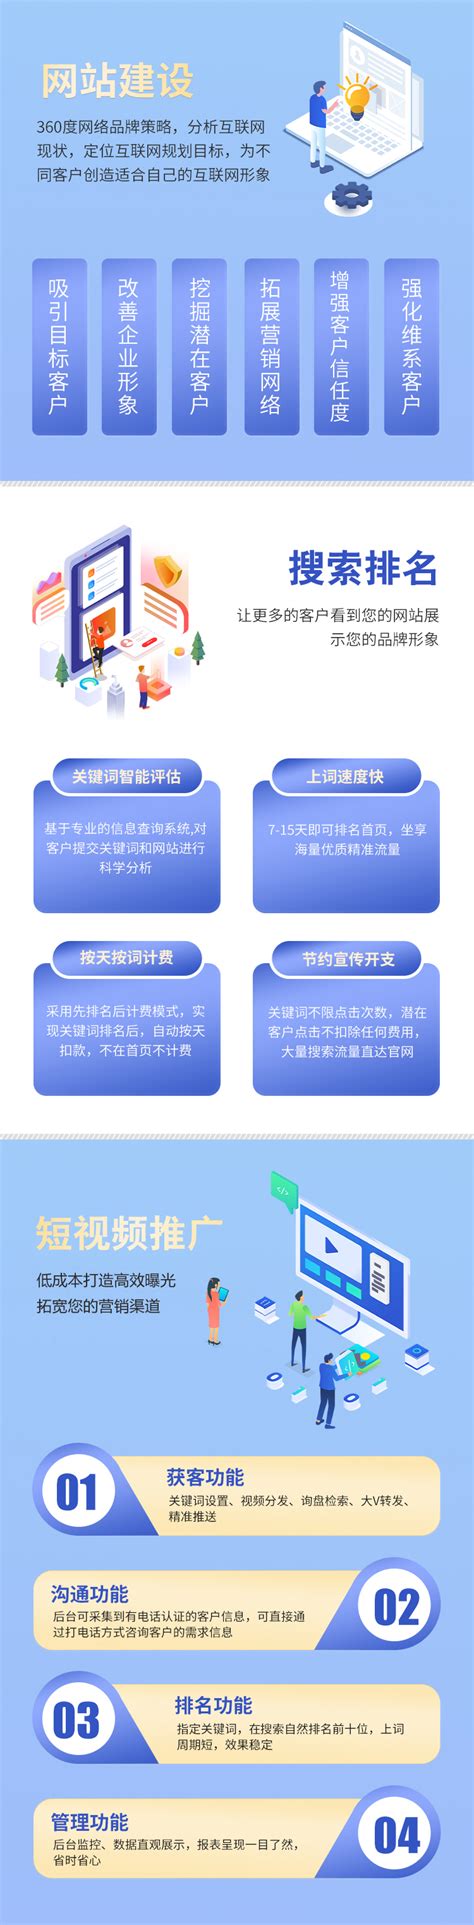 浙江网站建设企业